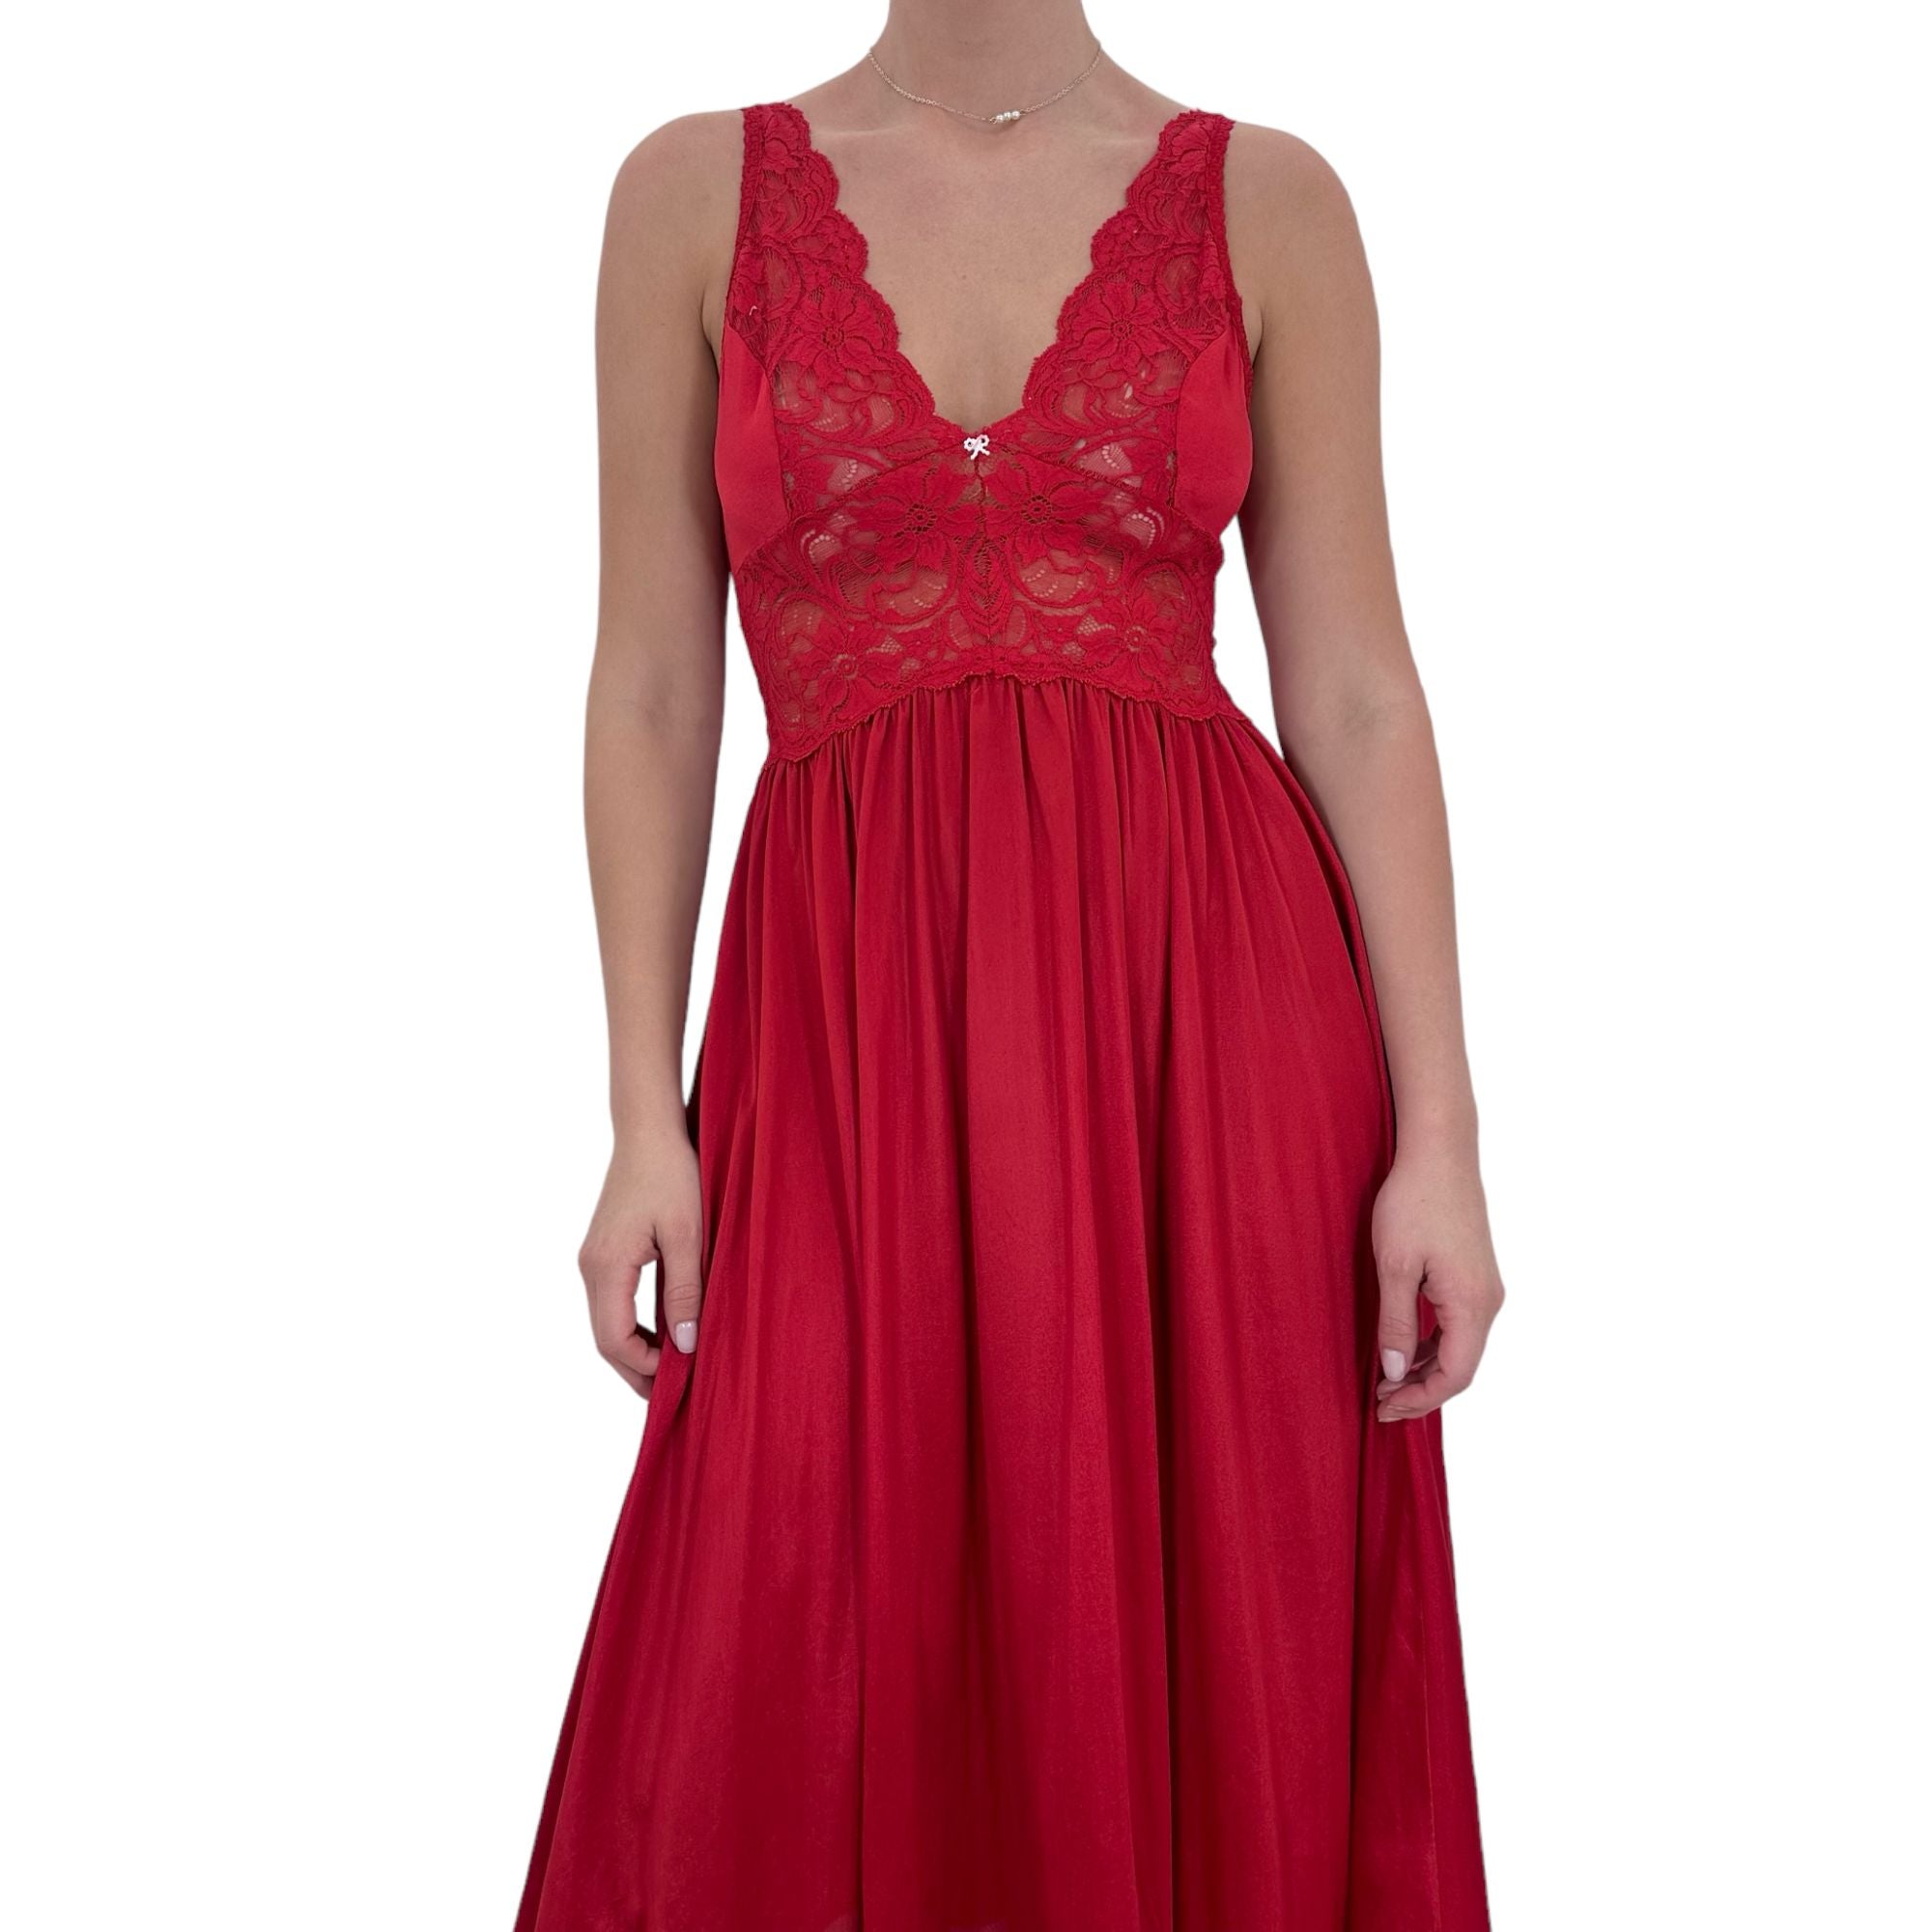 90s Vintage Red Floral Lace V-Neck Midi Dress [S]